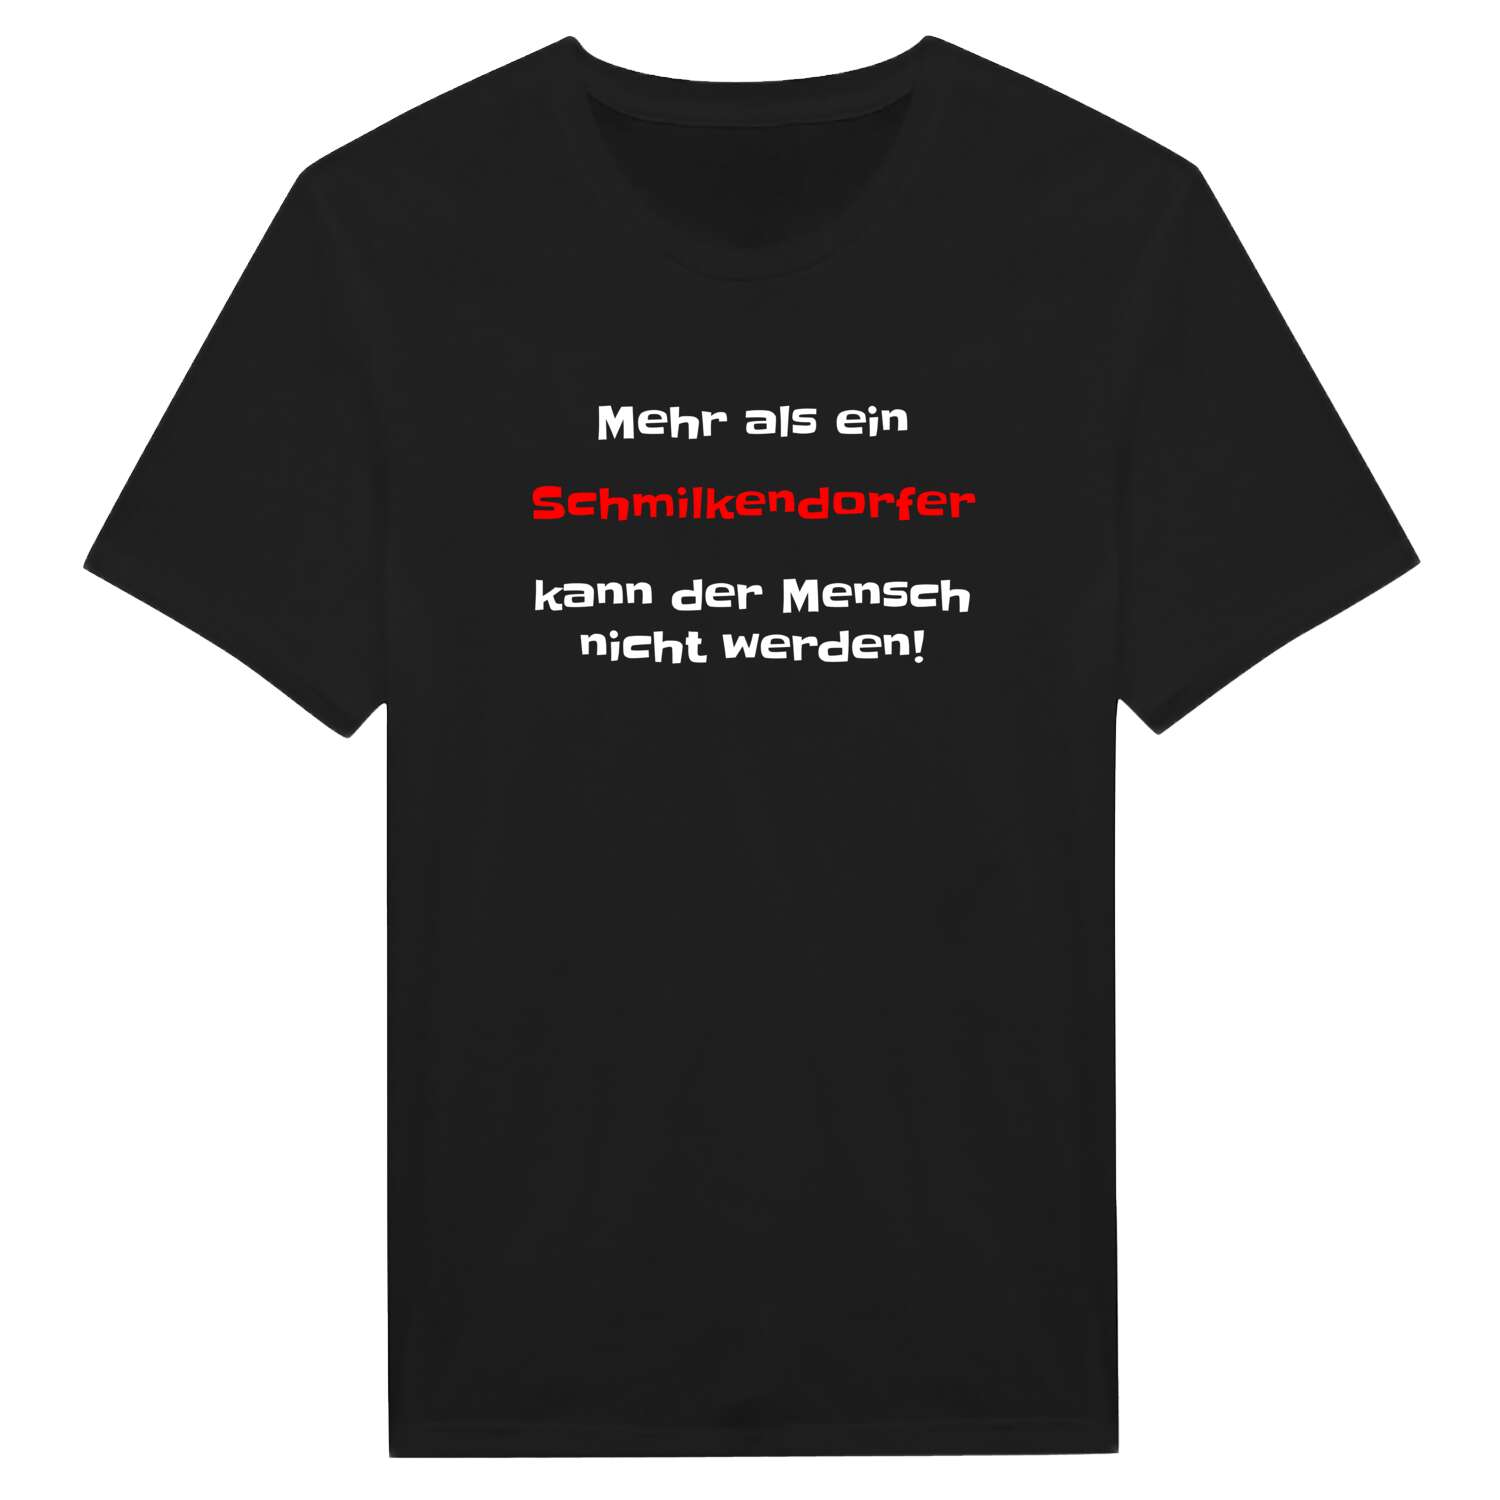 Schmilkendorf T-Shirt »Mehr als ein«